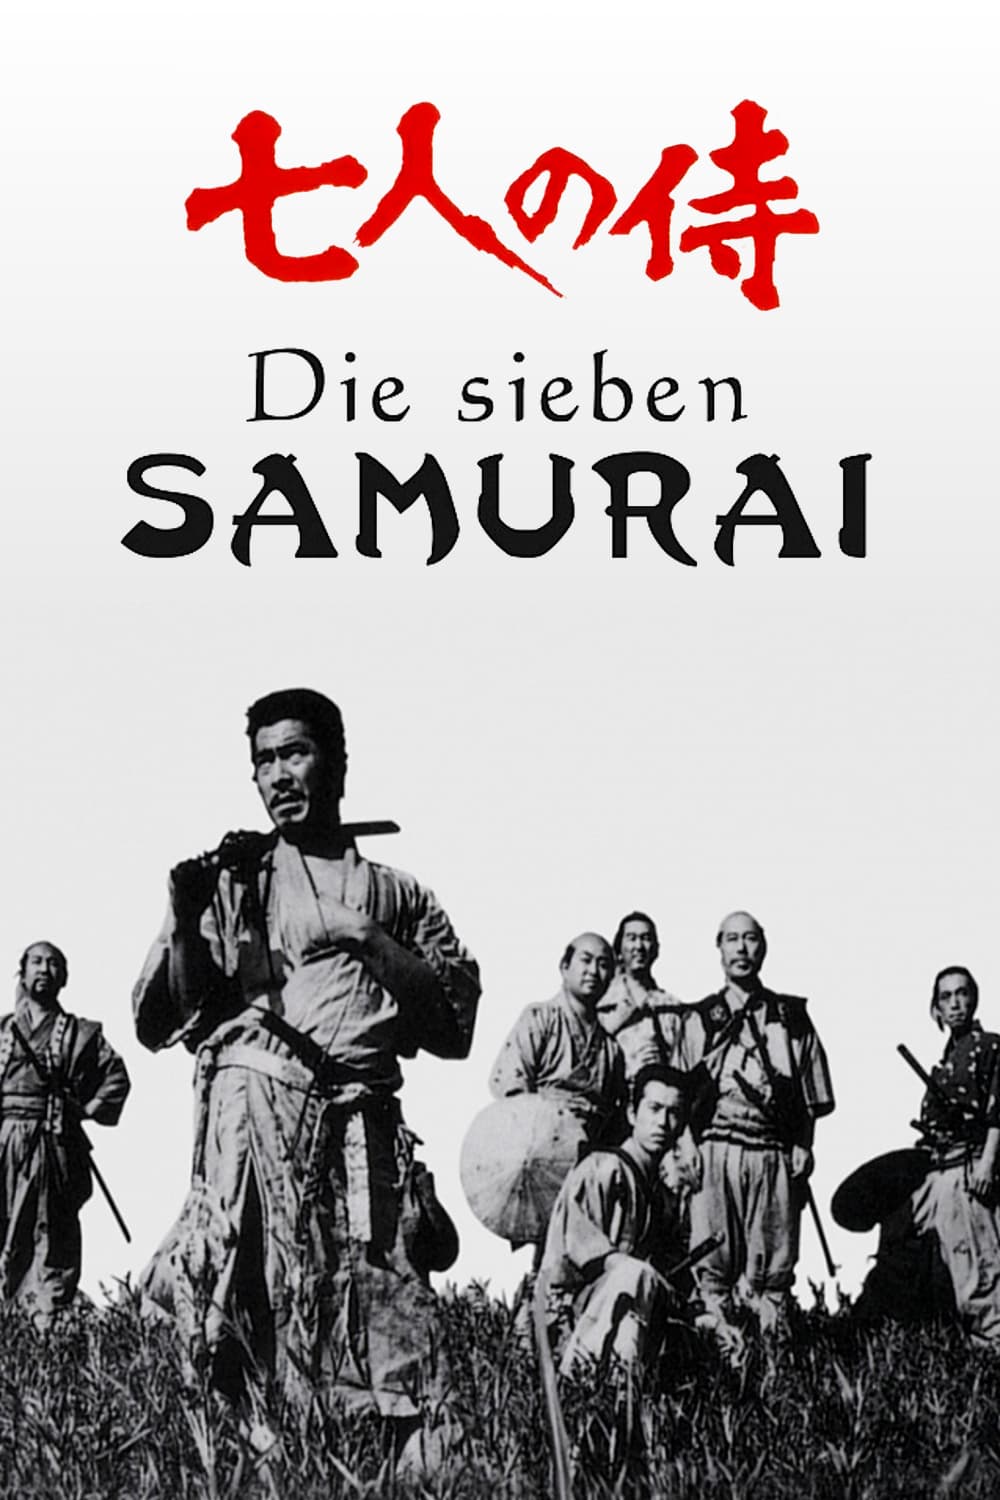 Plakat von "Die sieben Samurai"